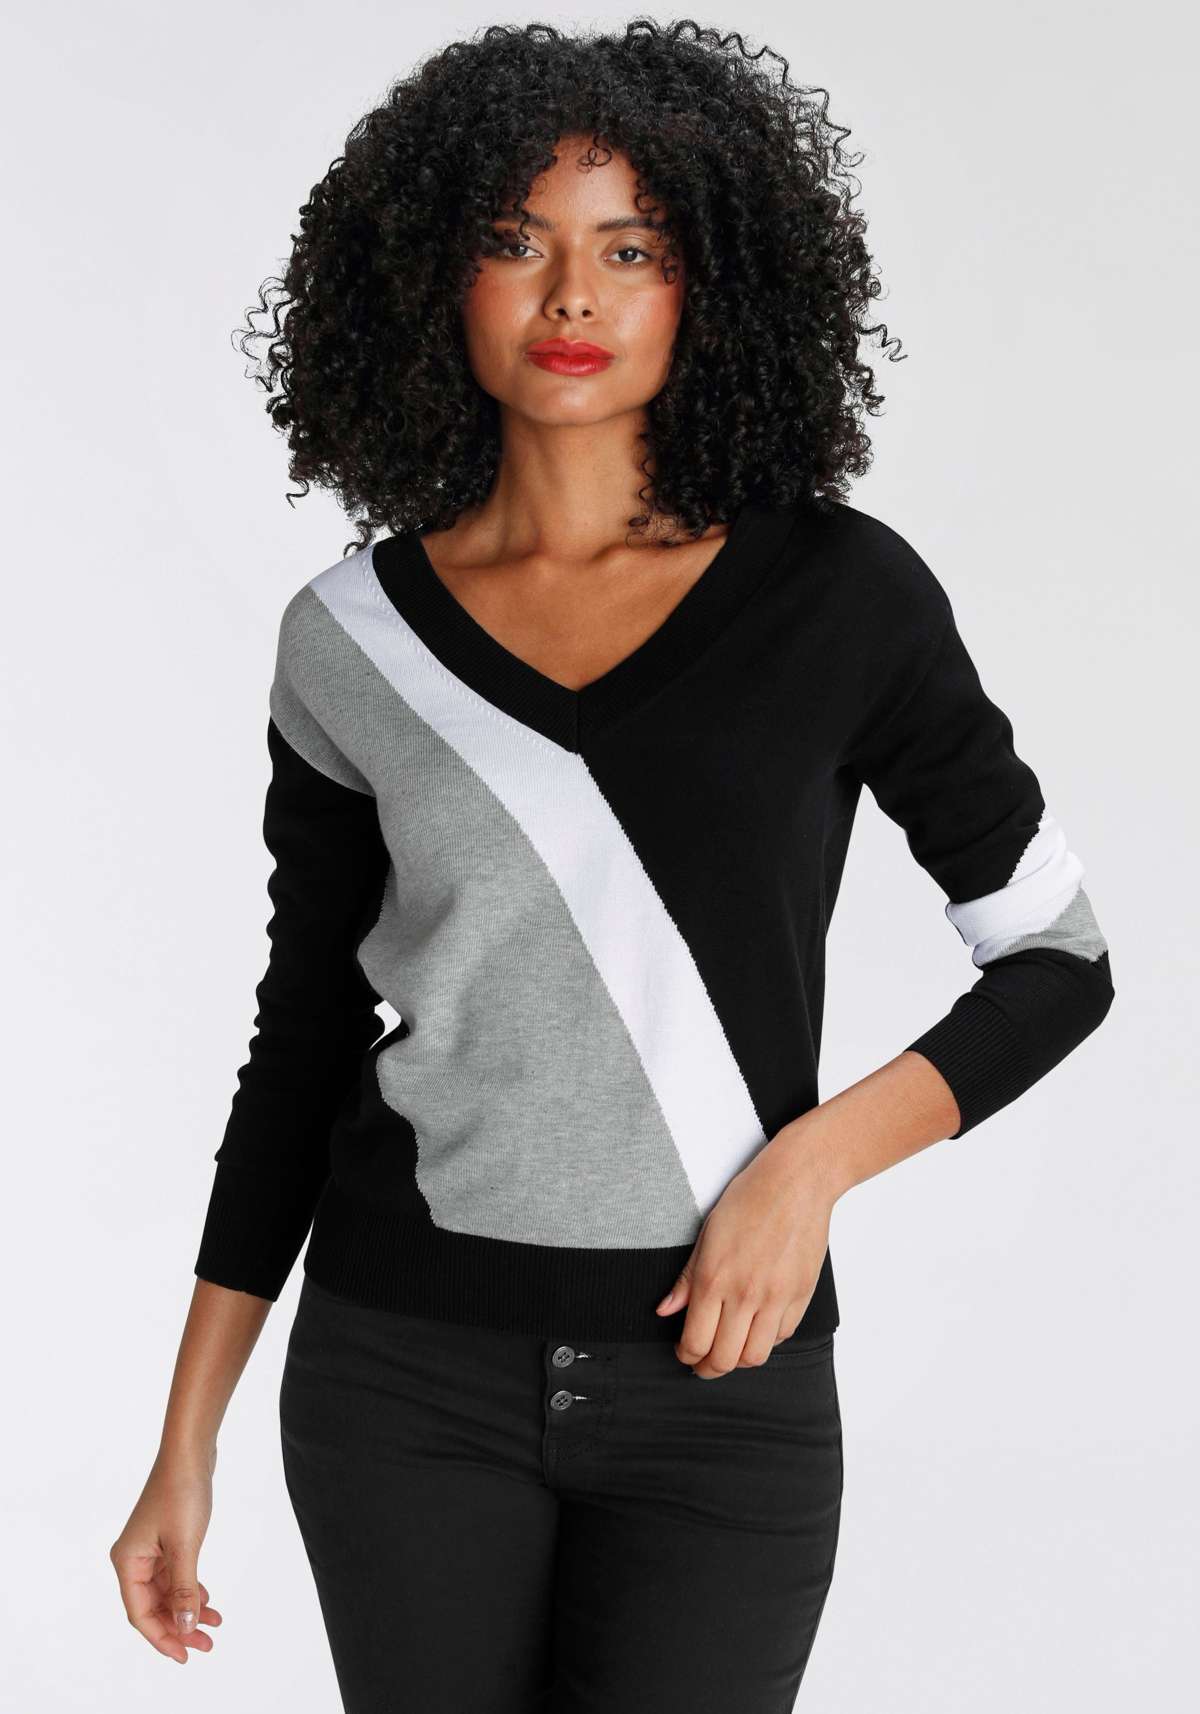 Полосатый свитер с модной диагональной цветовой блокировкой.